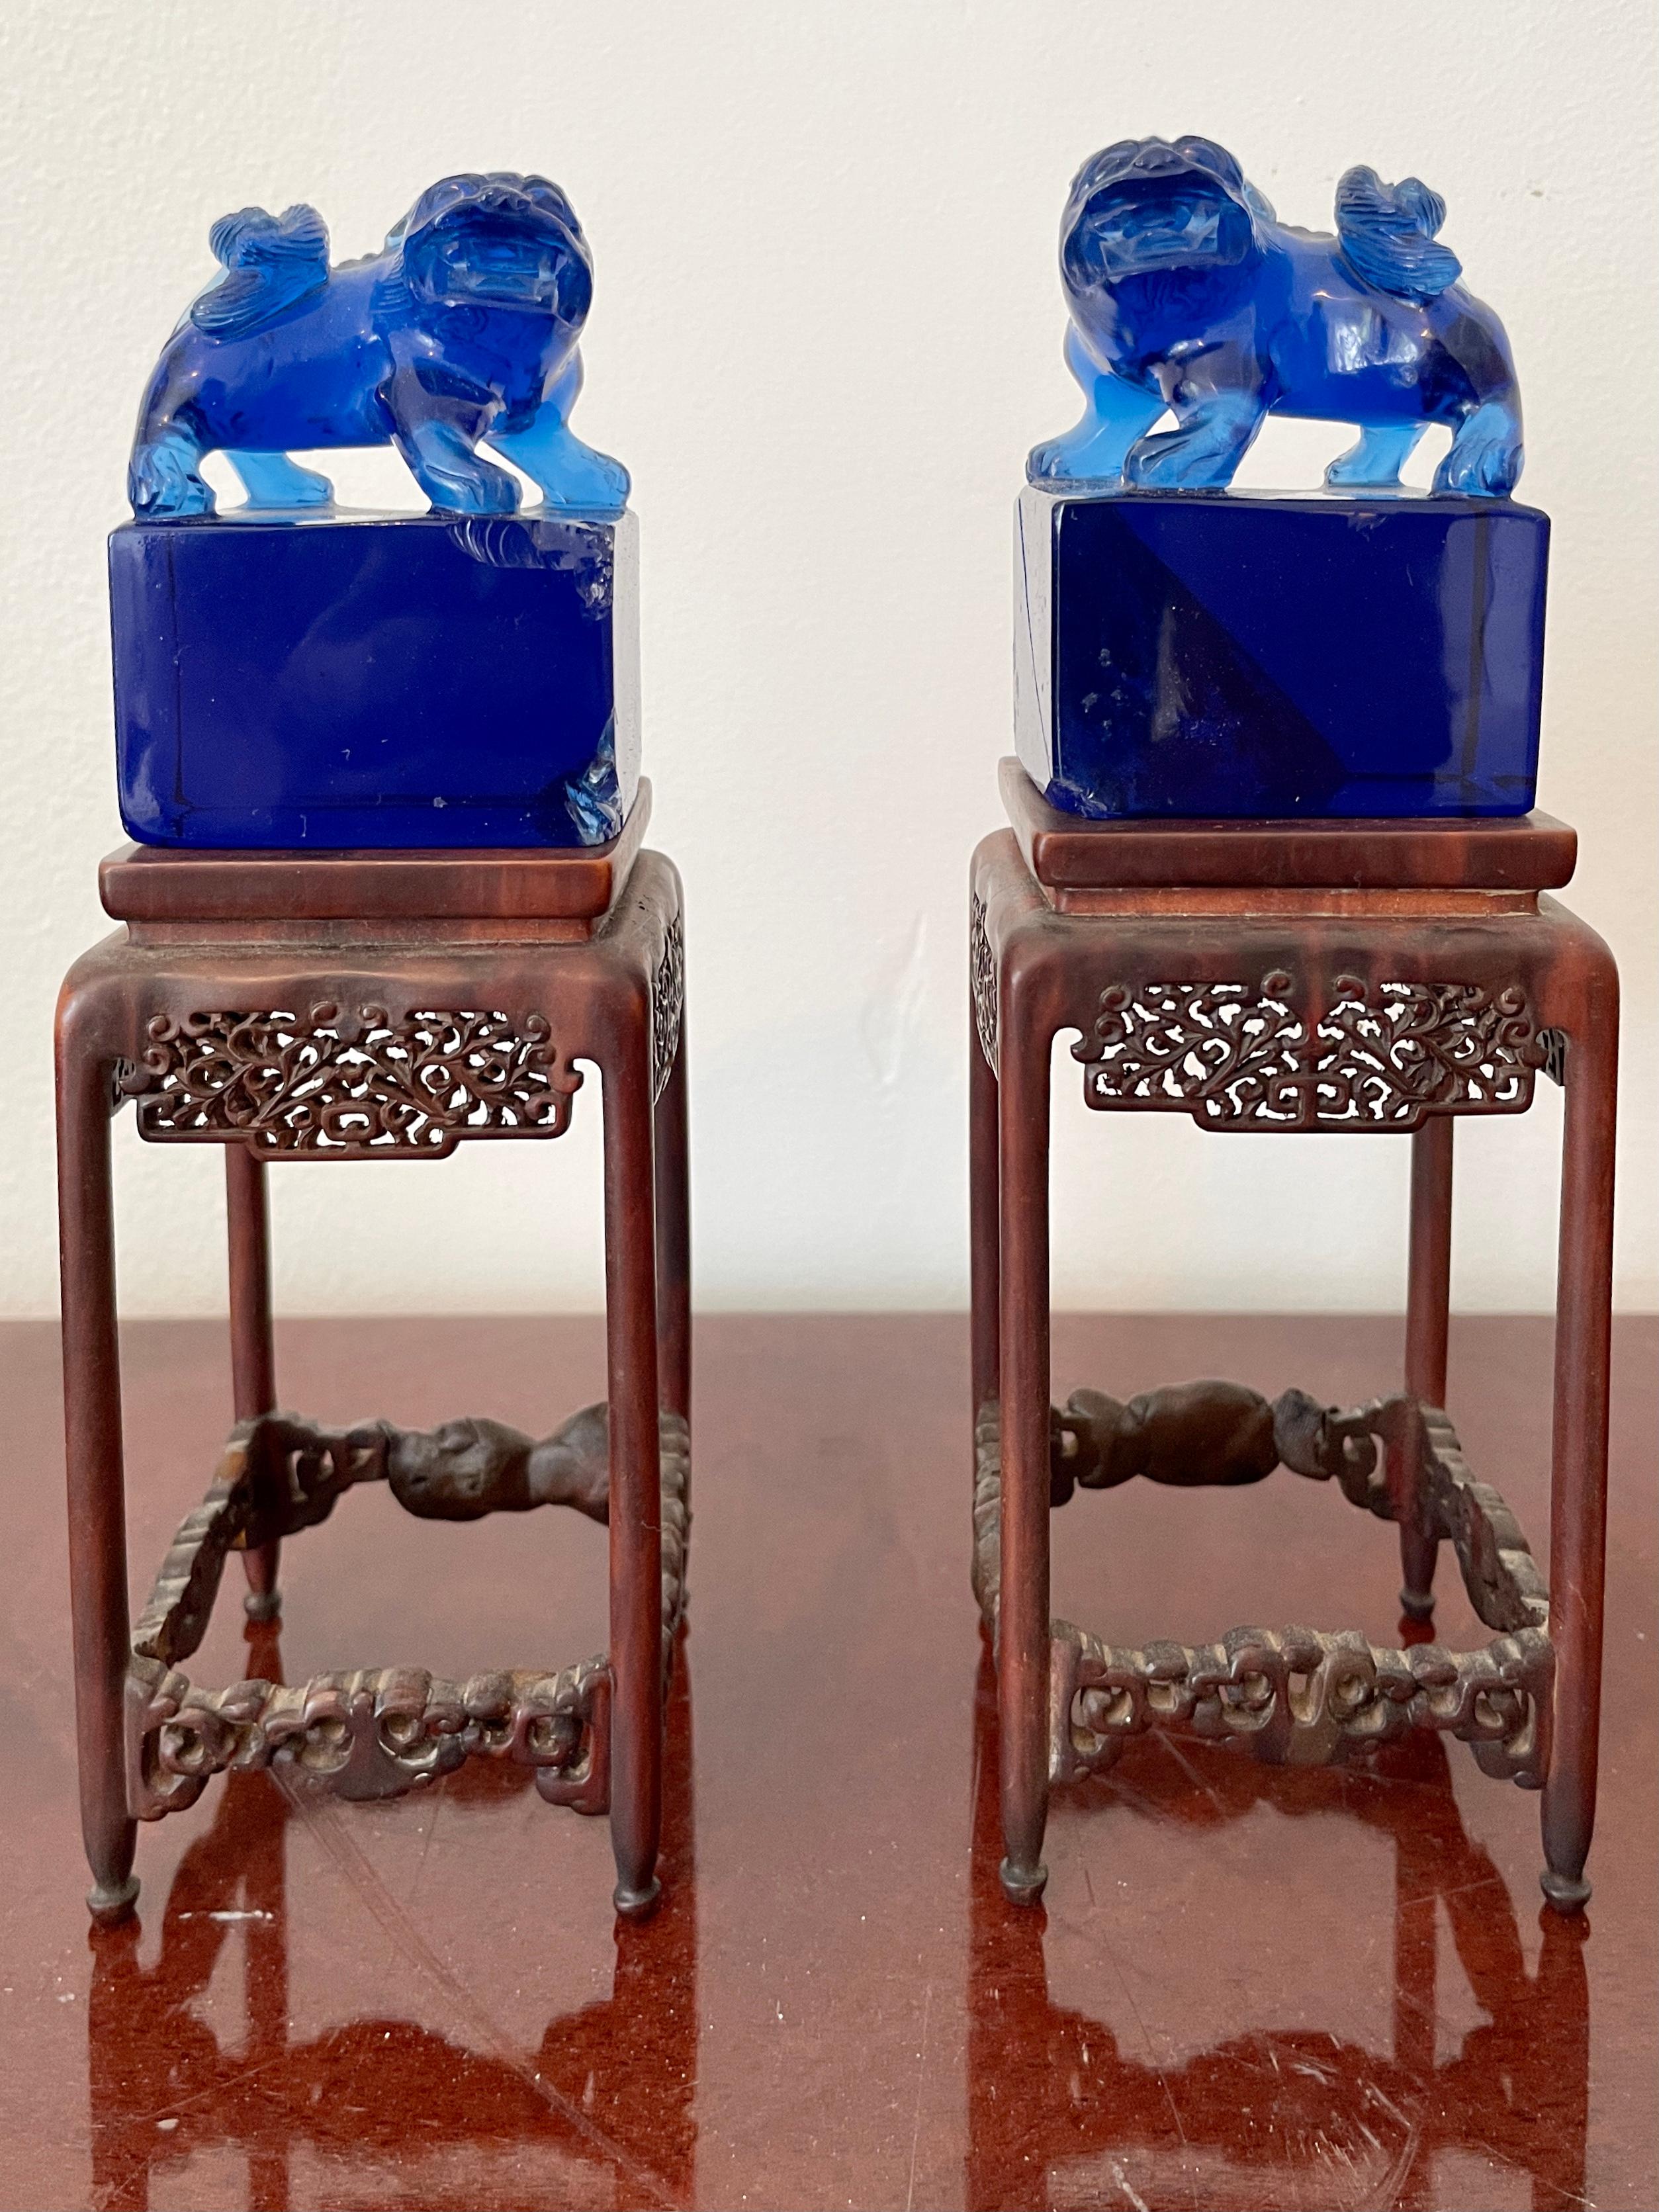 Belle paire de pierres précieuses bleues Foo Dogs sur un long socle. Un excellent complément pour vos intérieurs classiques inspirés et vos plateaux de table.